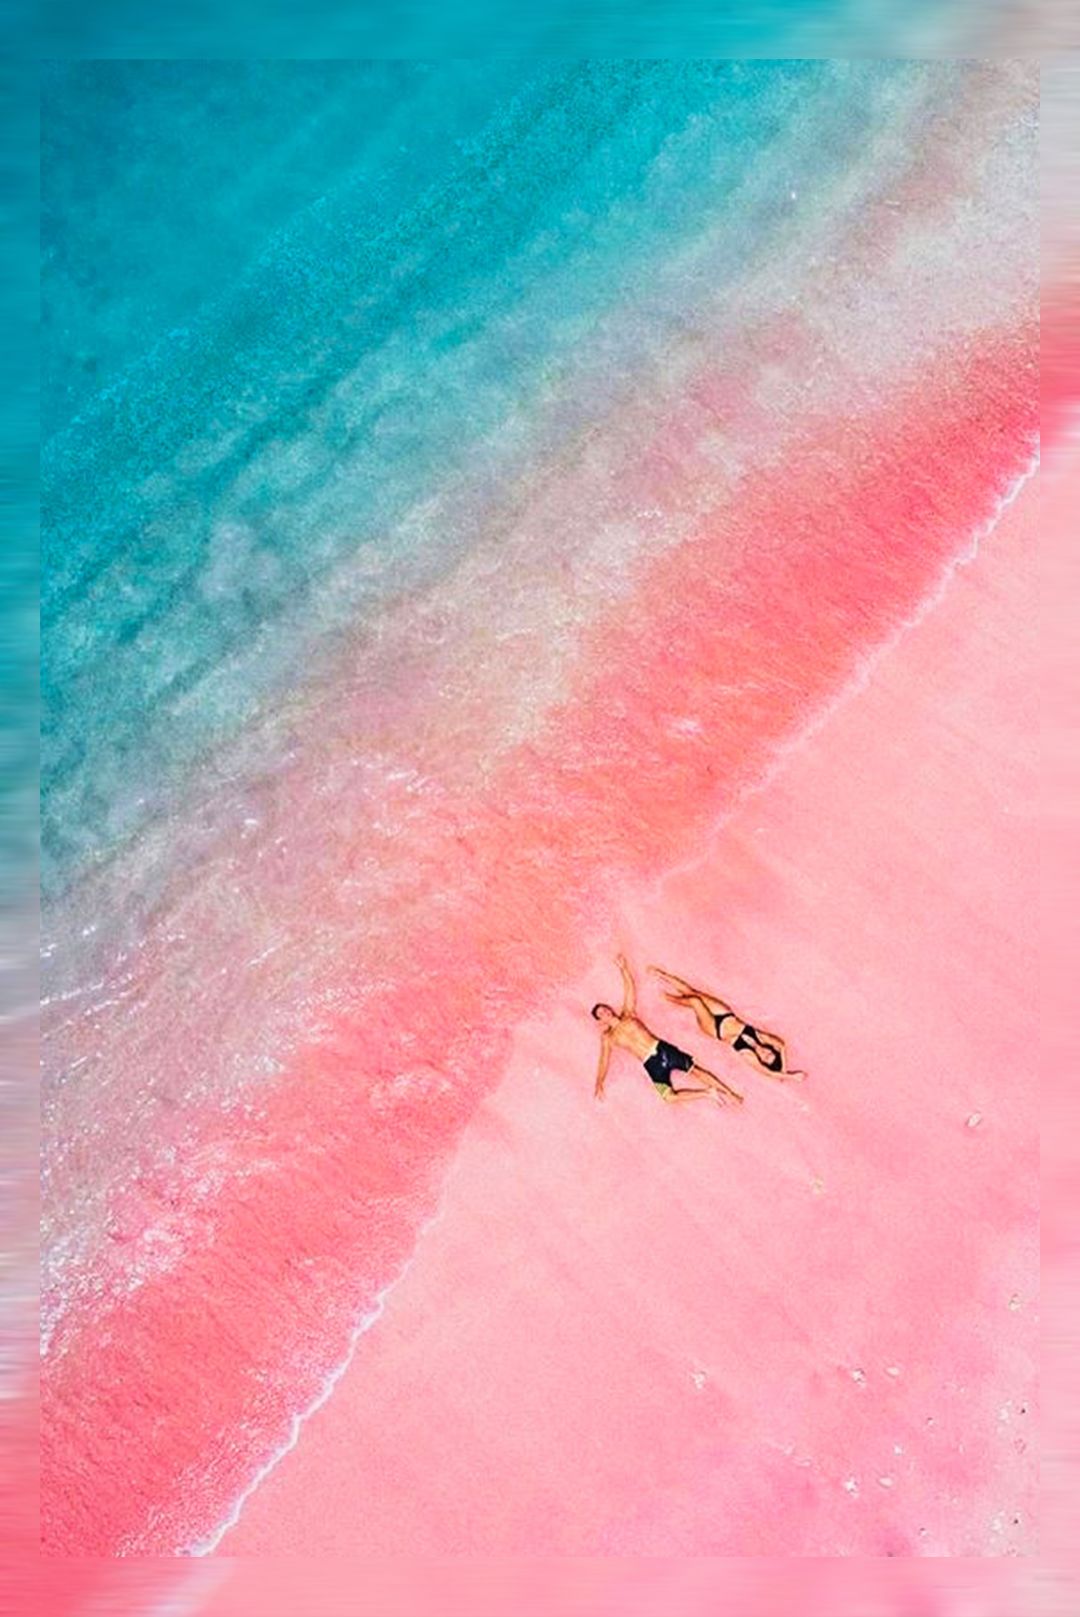 印尼科莫多岛的粉红海滩所以去碧蓝的海边拍照时穿粉色也是实名的real